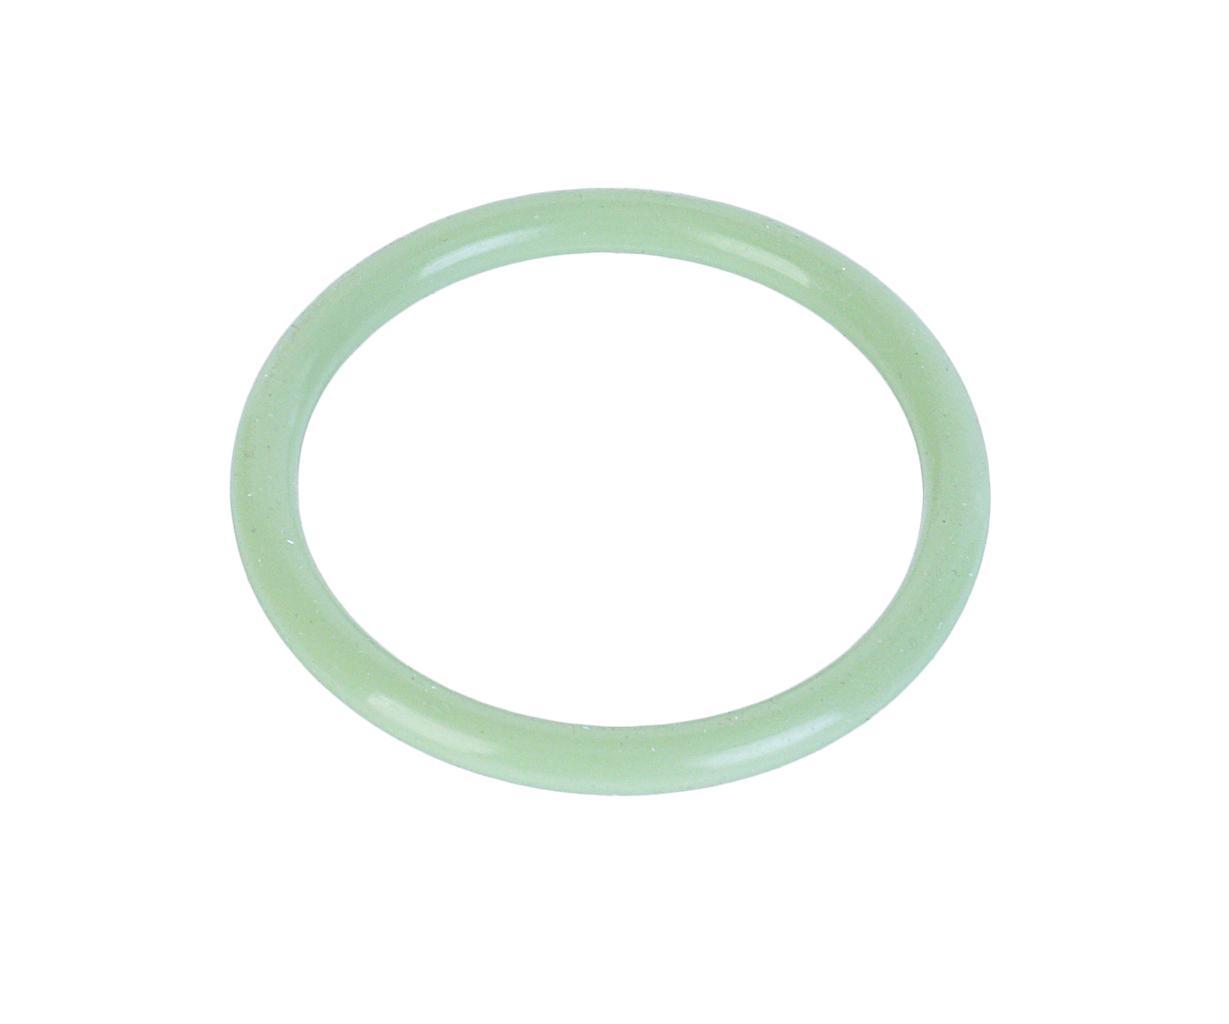 Кольцо ЯМЗ-650.10 уплотнительное патрубка маслозаборного зеленое силикон РД, 650.1011560, РУССКИЙ ДВИГАТЕЛЬ